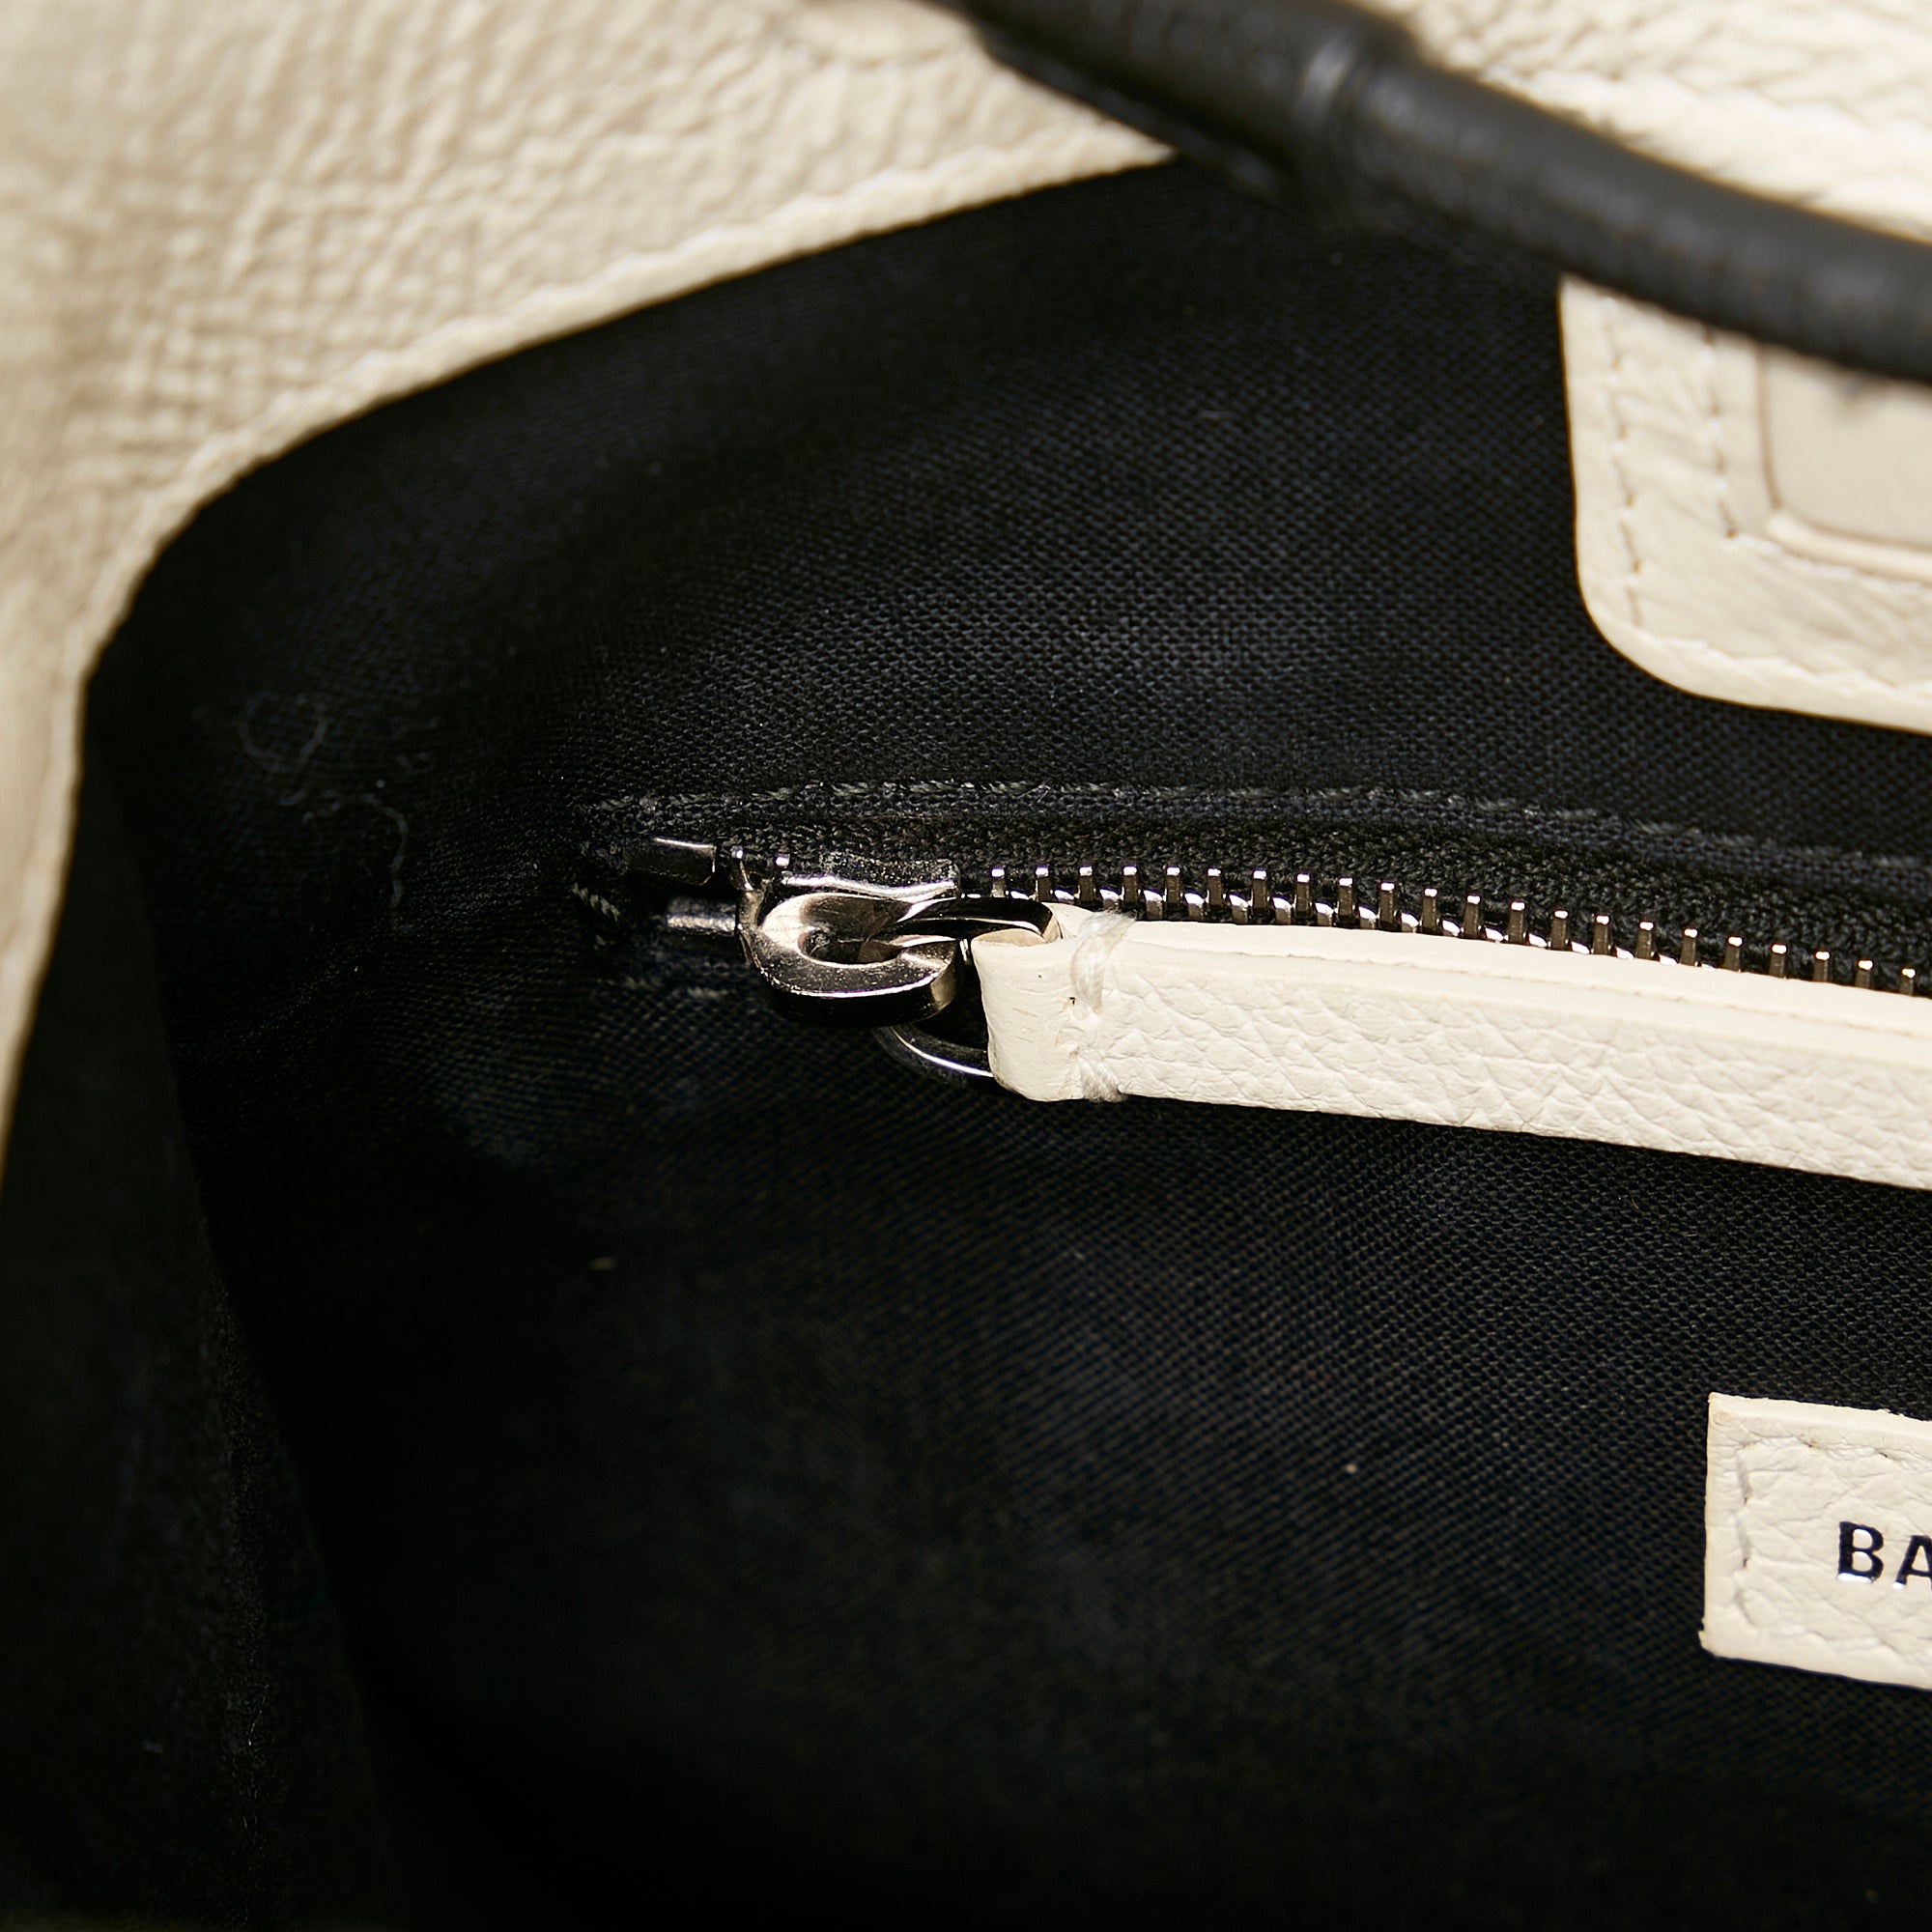 Balenciaga Glove Large leather tote bag